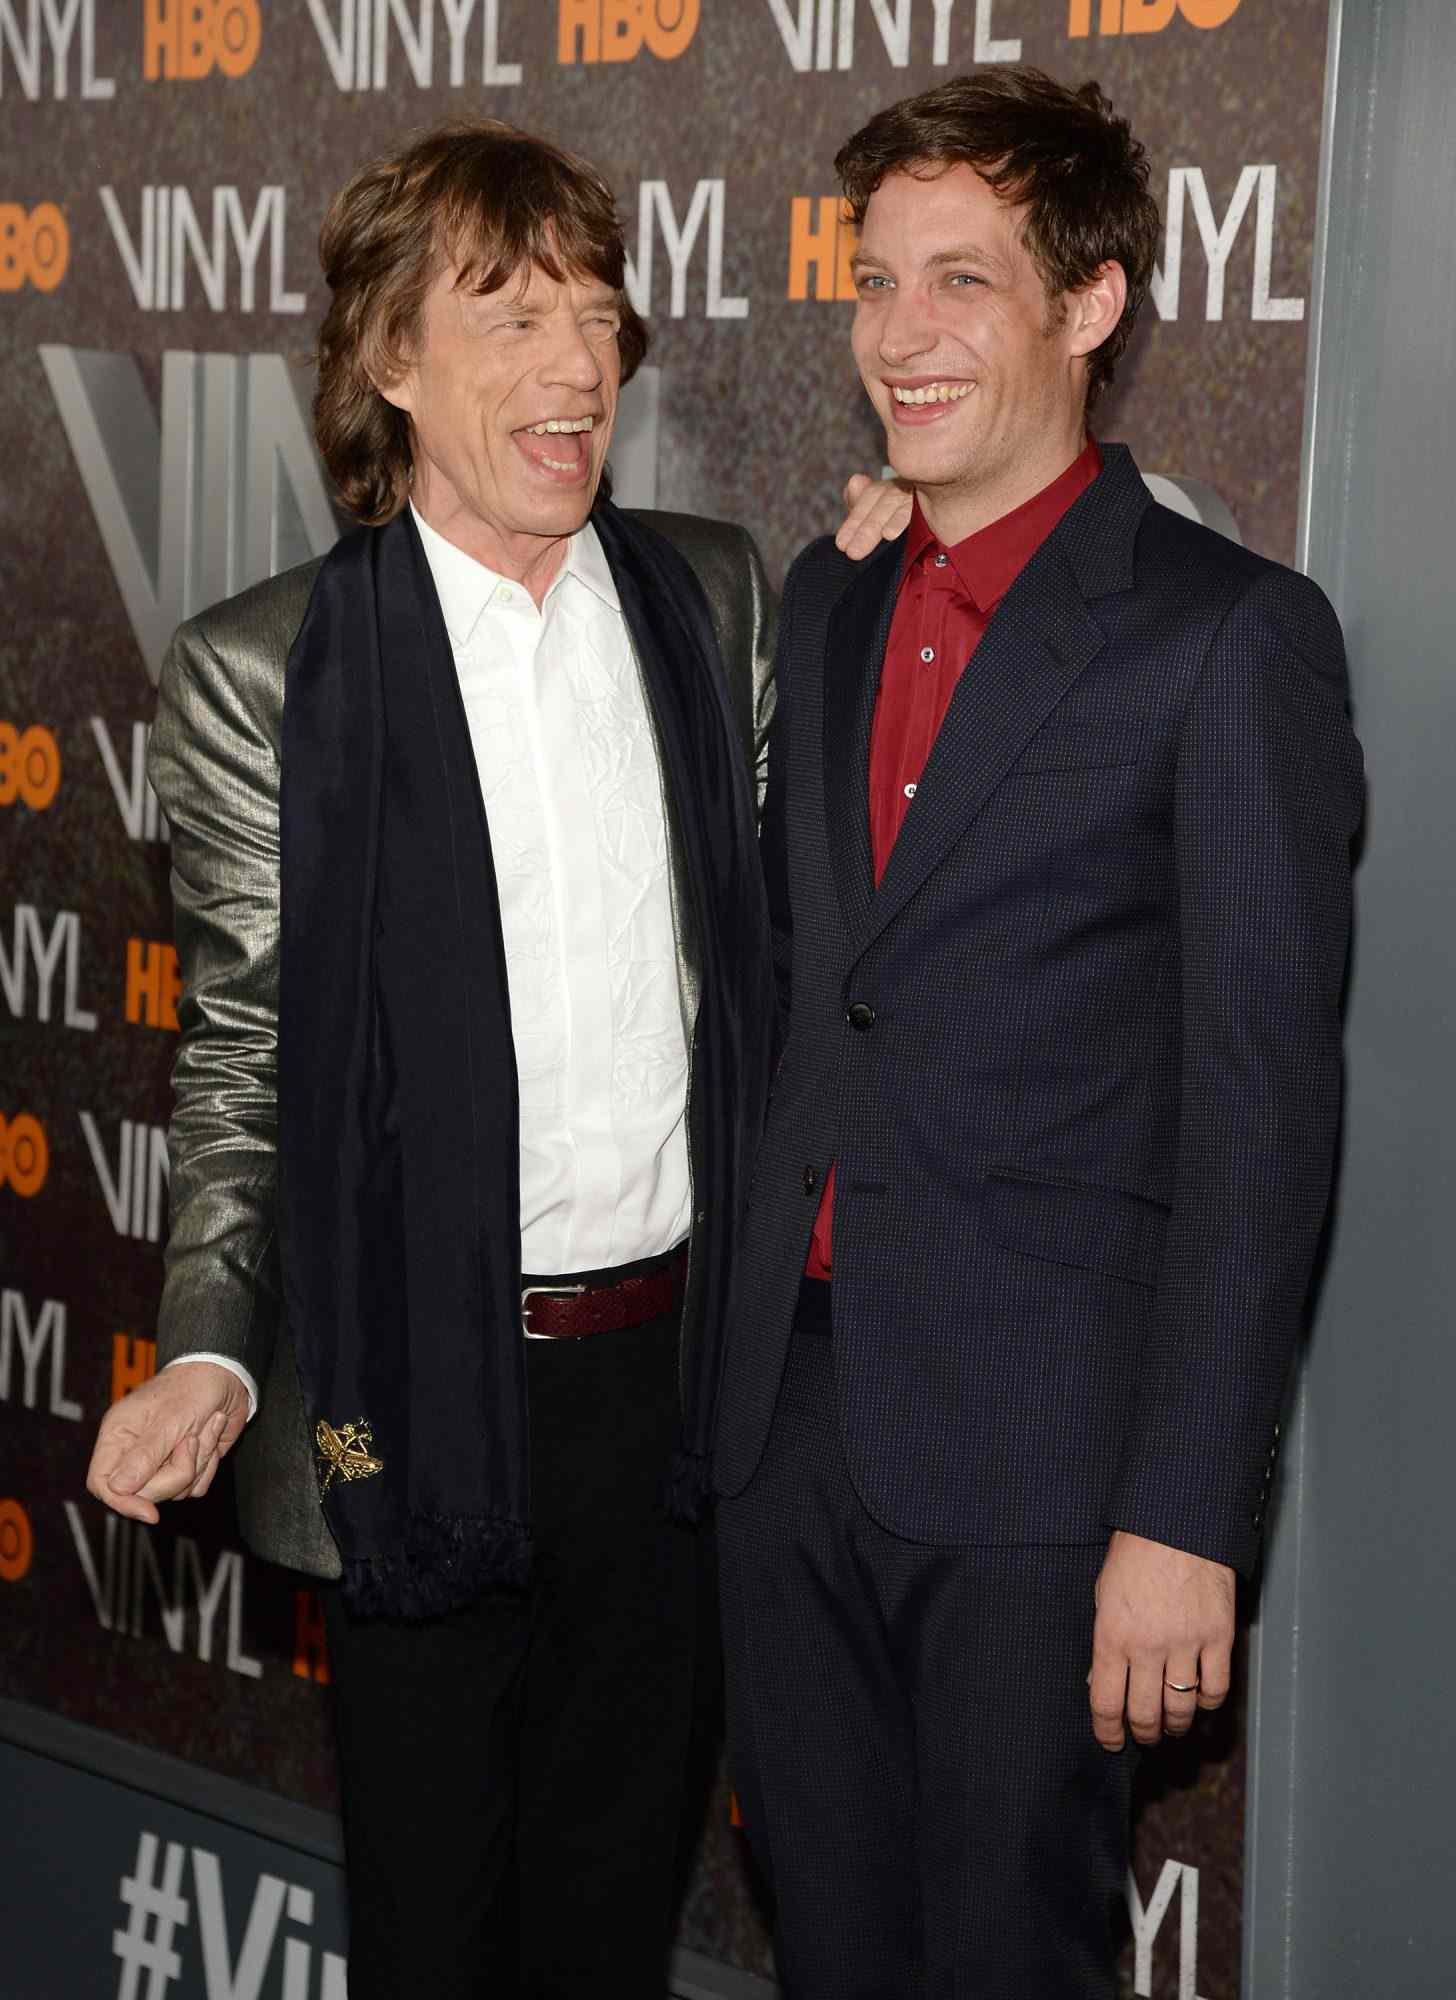 Mick Jagger and James Jagger